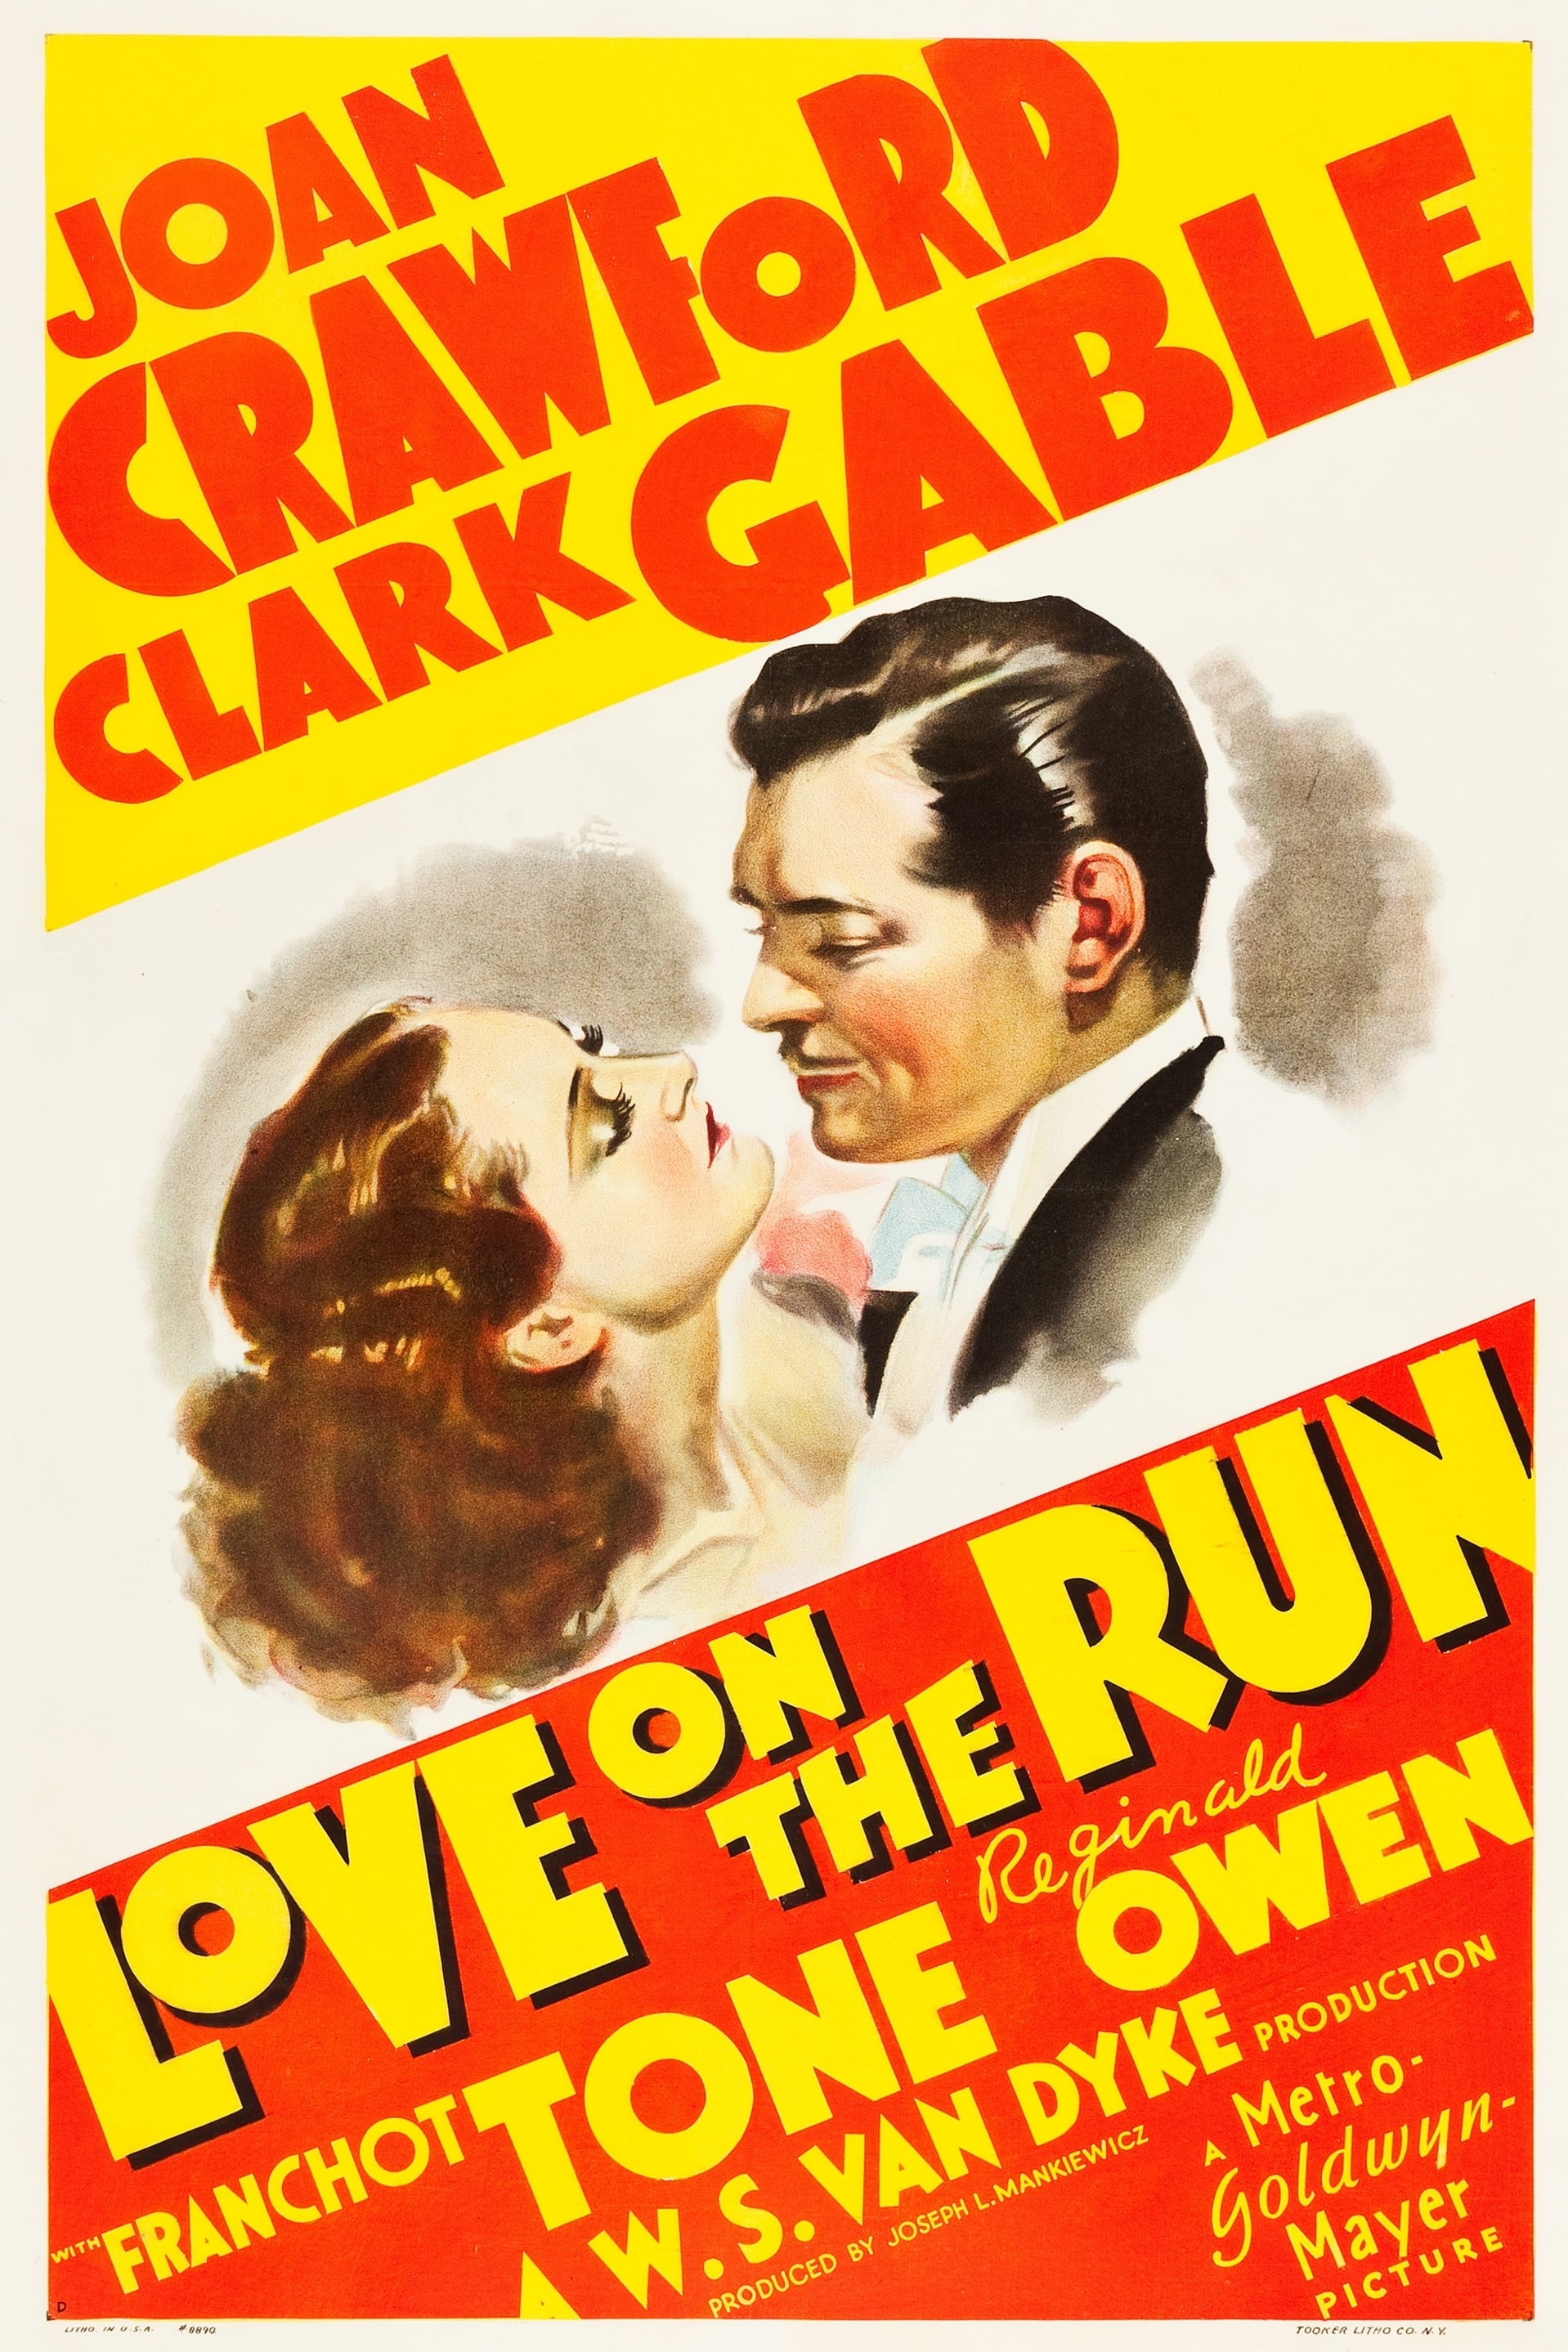 Love on the Run (1936)